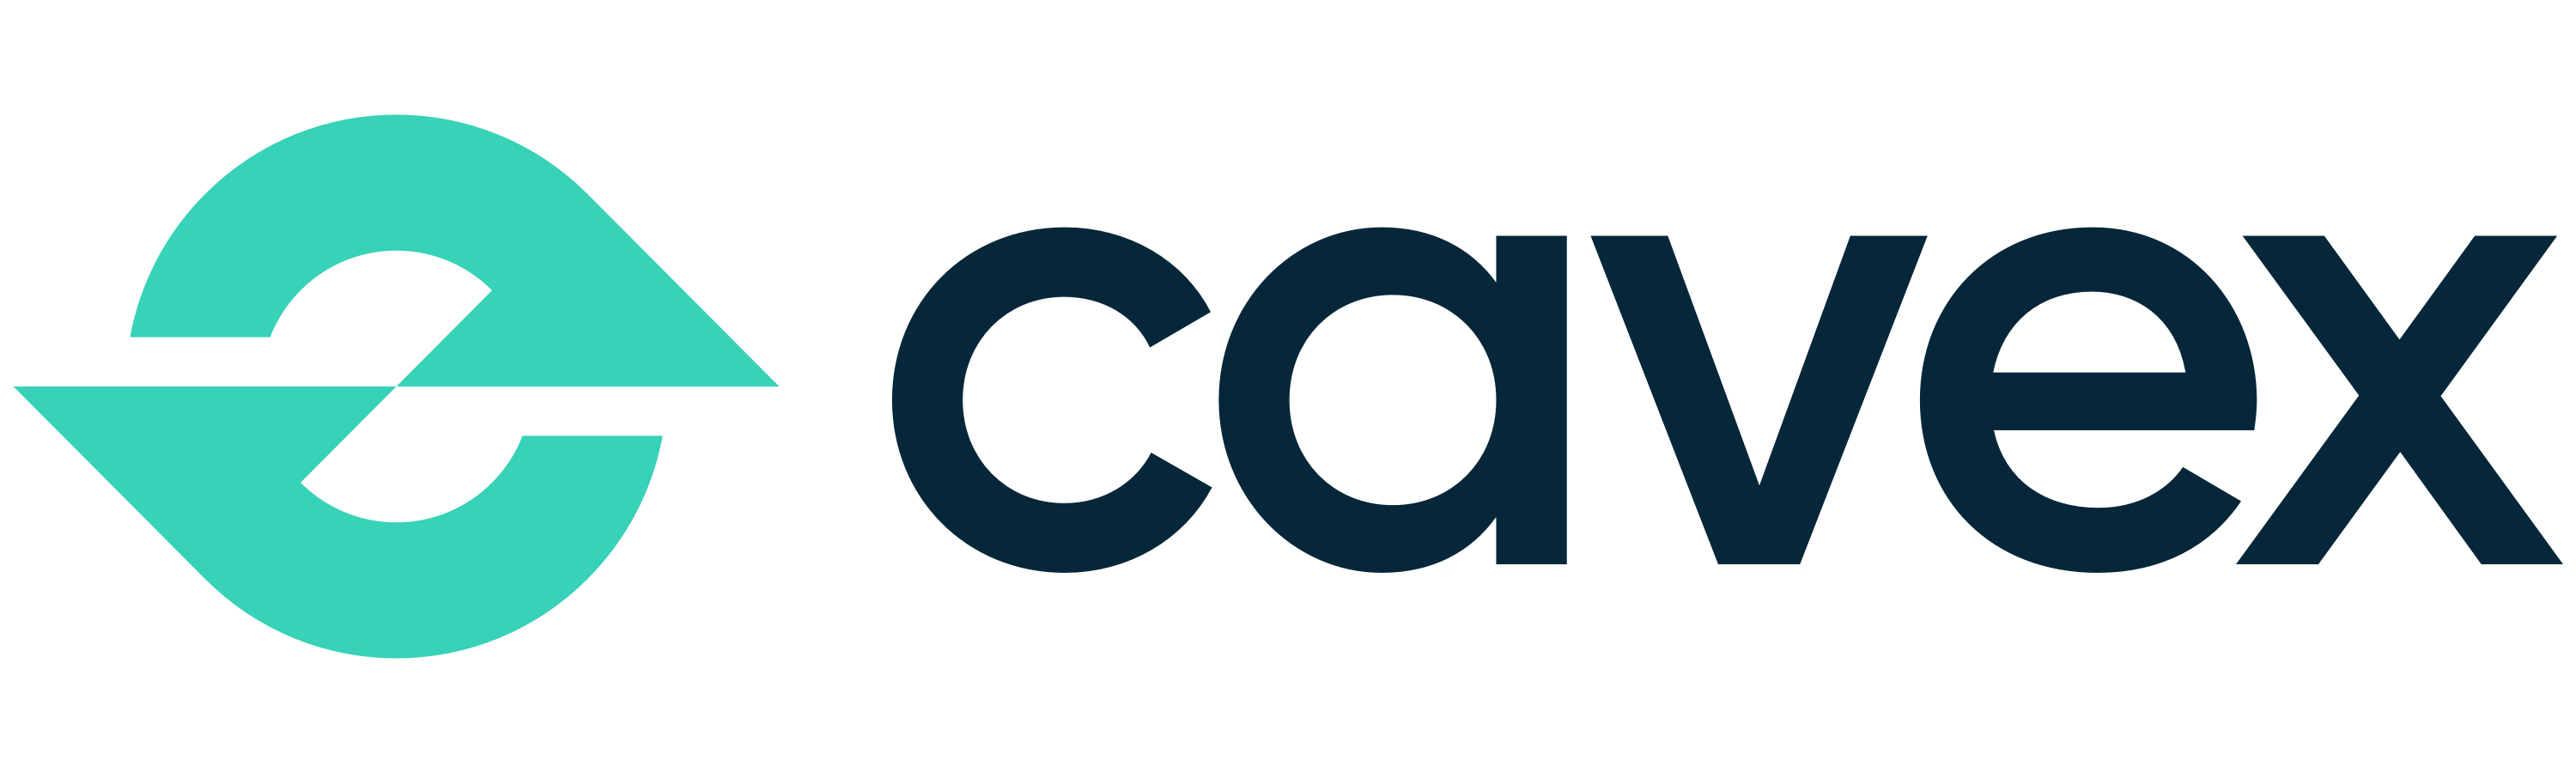 cavex company logo